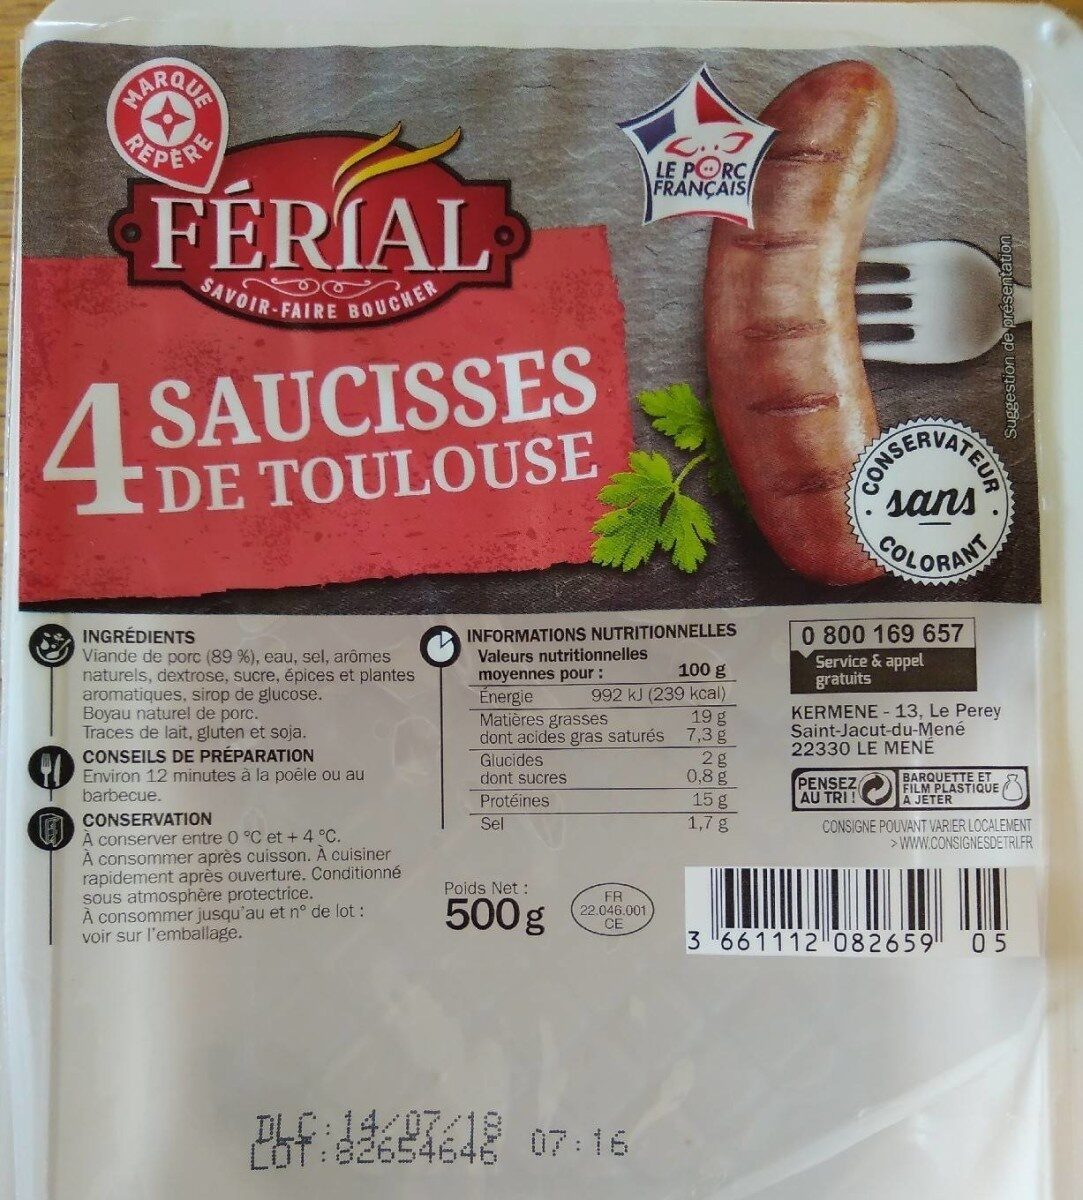 4 Saucisses de Toulouse - Tableau nutritionnel